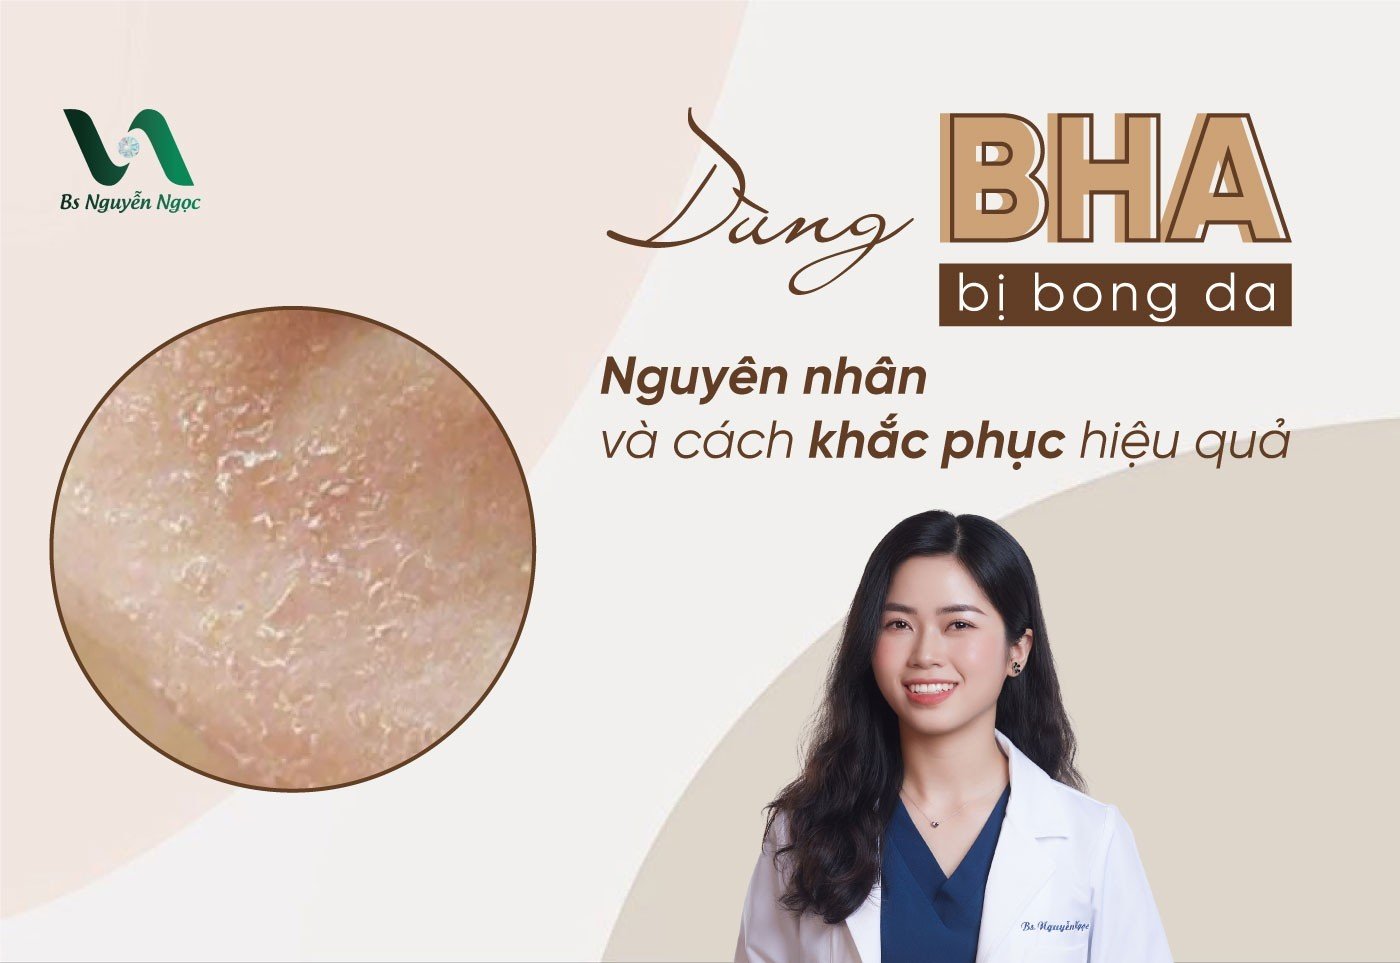 Dùng BHA bị bong da: Nguyên nhân và cách khắc phục hiệu quả